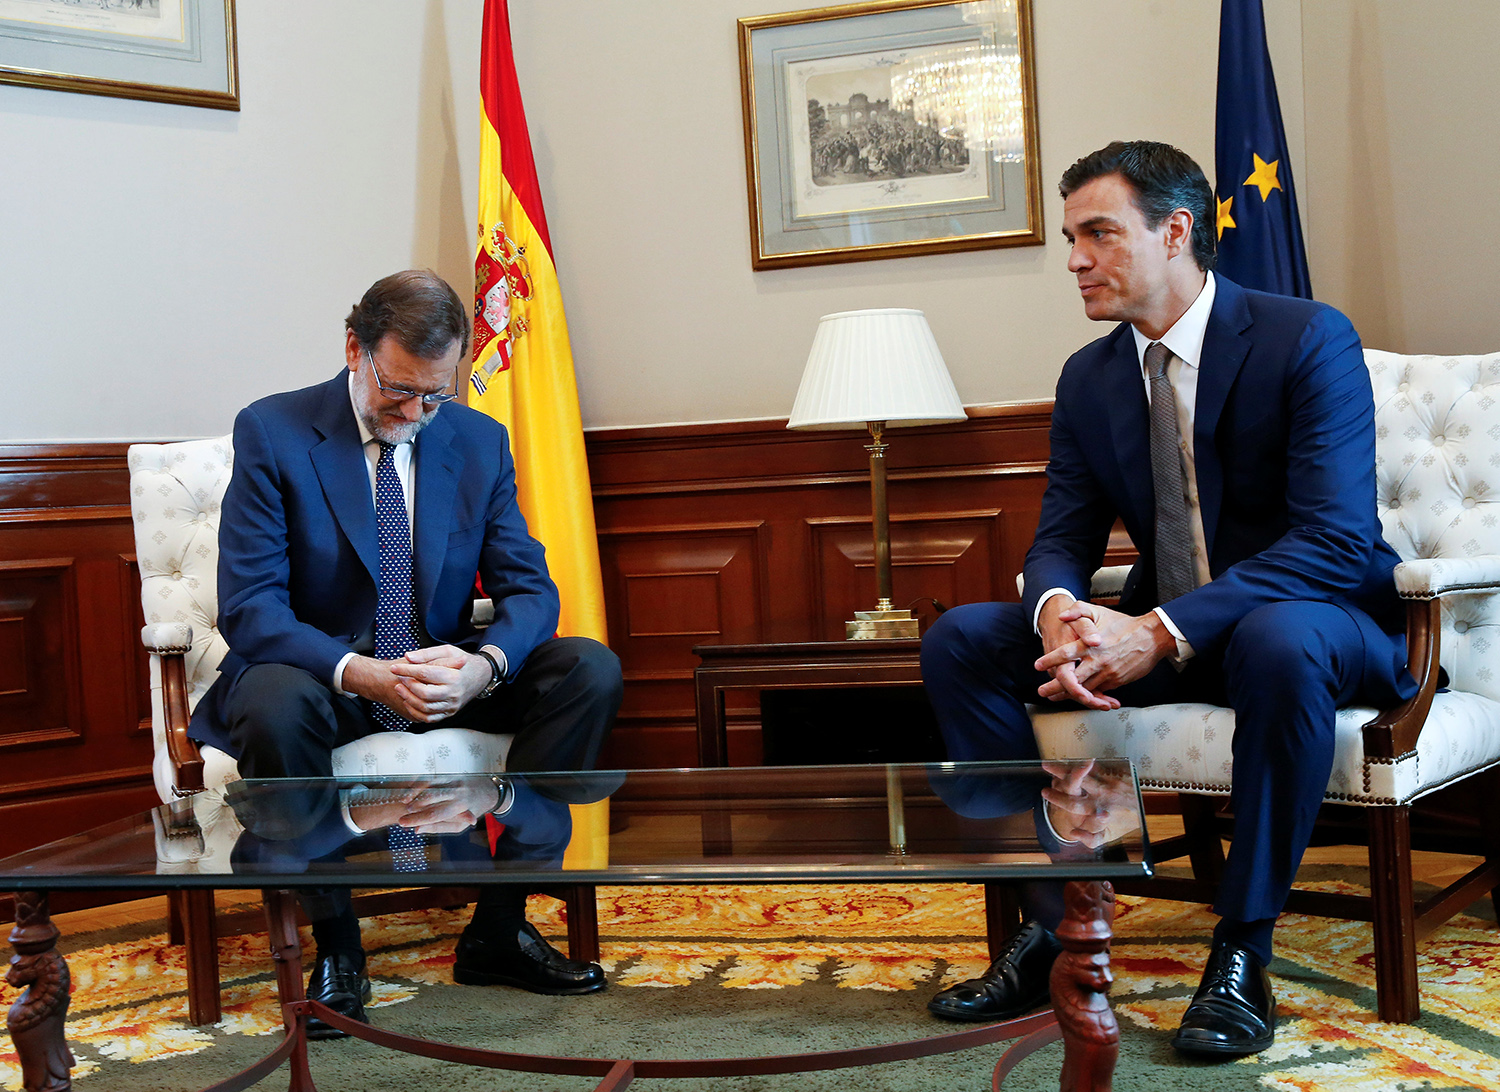 Intercambio de reproches tras las reunión fallida entre Rajoy y Sánchez